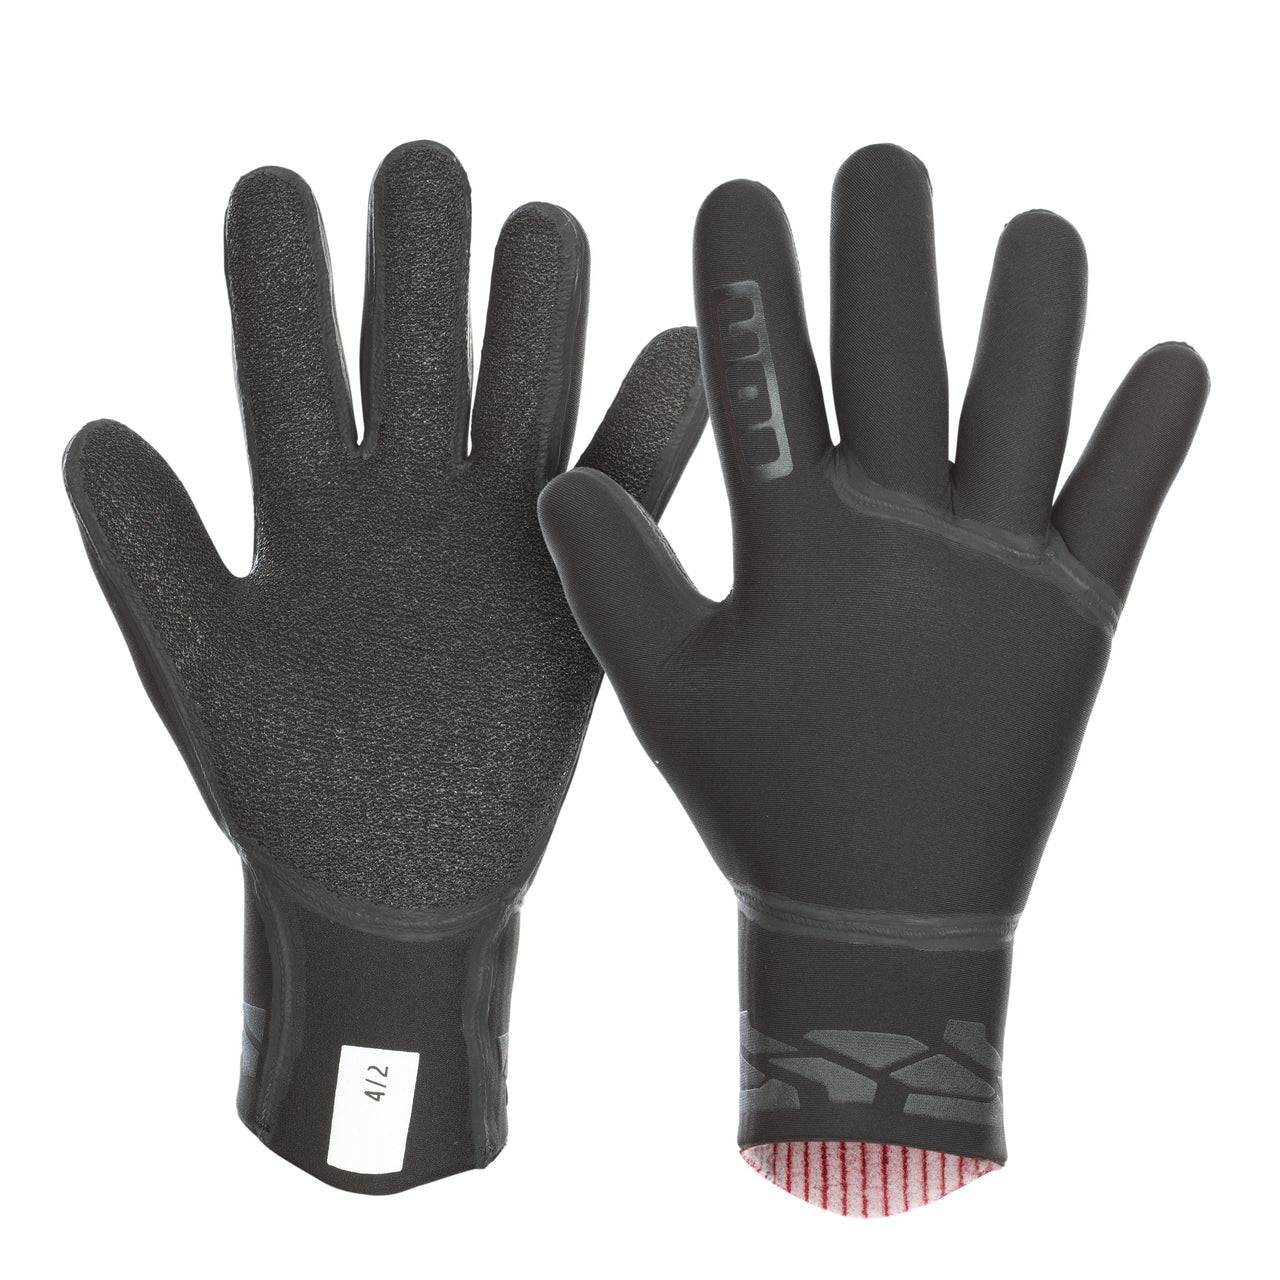 ION Water Gloves Neo 4/2 unisex – Neopren Handschuhe